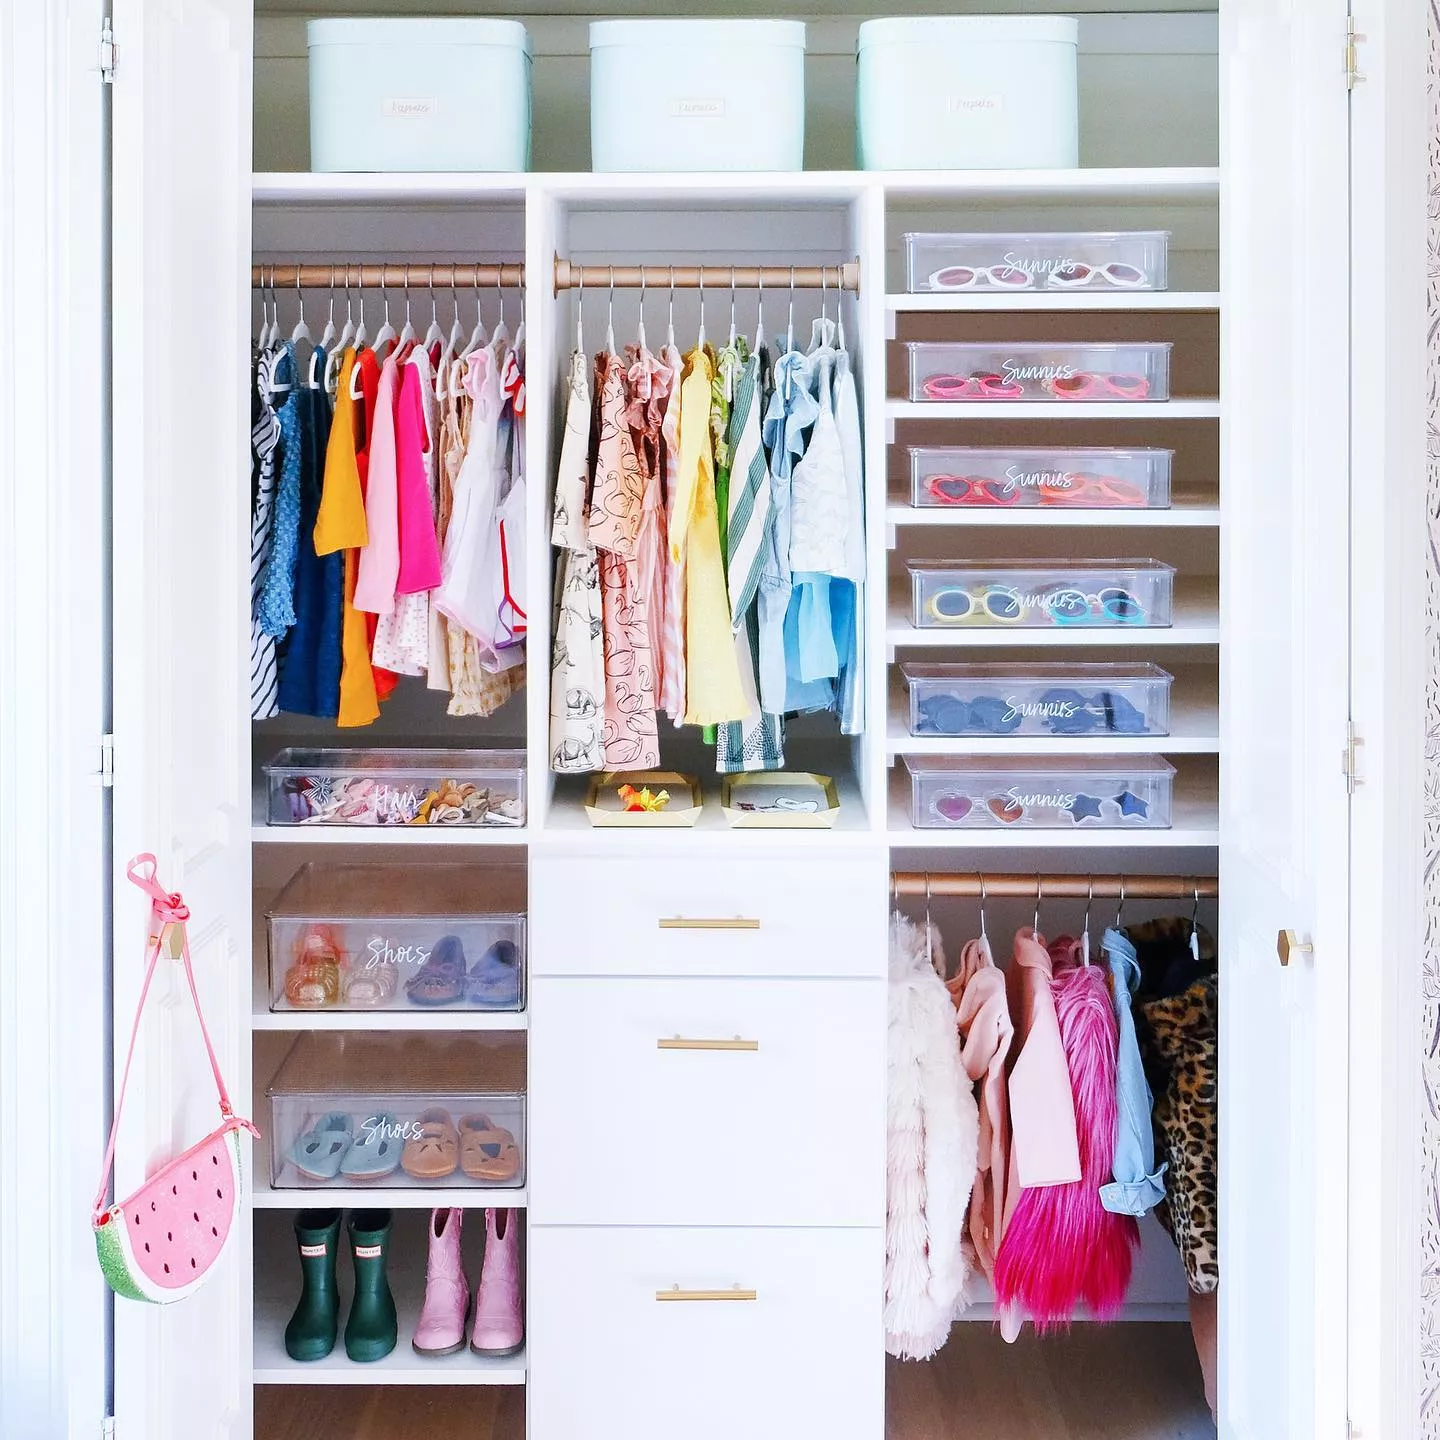 Arcoiris Detergente - Optimiza el espacio de tu closet siguiendo estos tips  para doblar tu ropa limpia.😉🥼 Te presentamos este sencillo método para  poder organizar tu closet y tener más espacio para